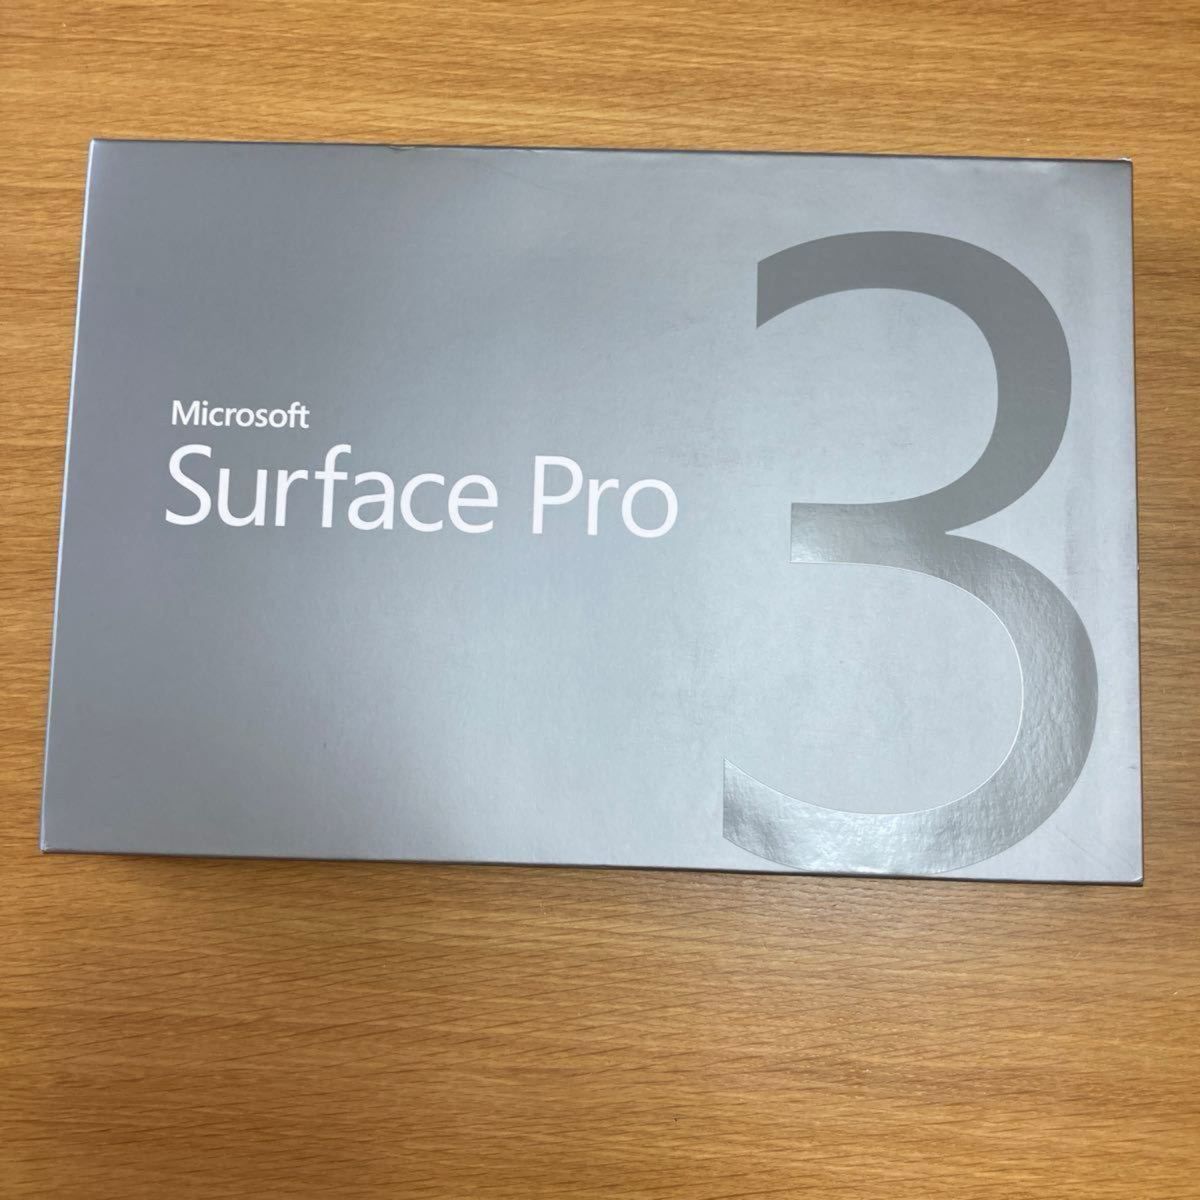 【ジャンク品】Surface Pro 3, Intel Core i5 Processor, 256GB, 8GB RAM